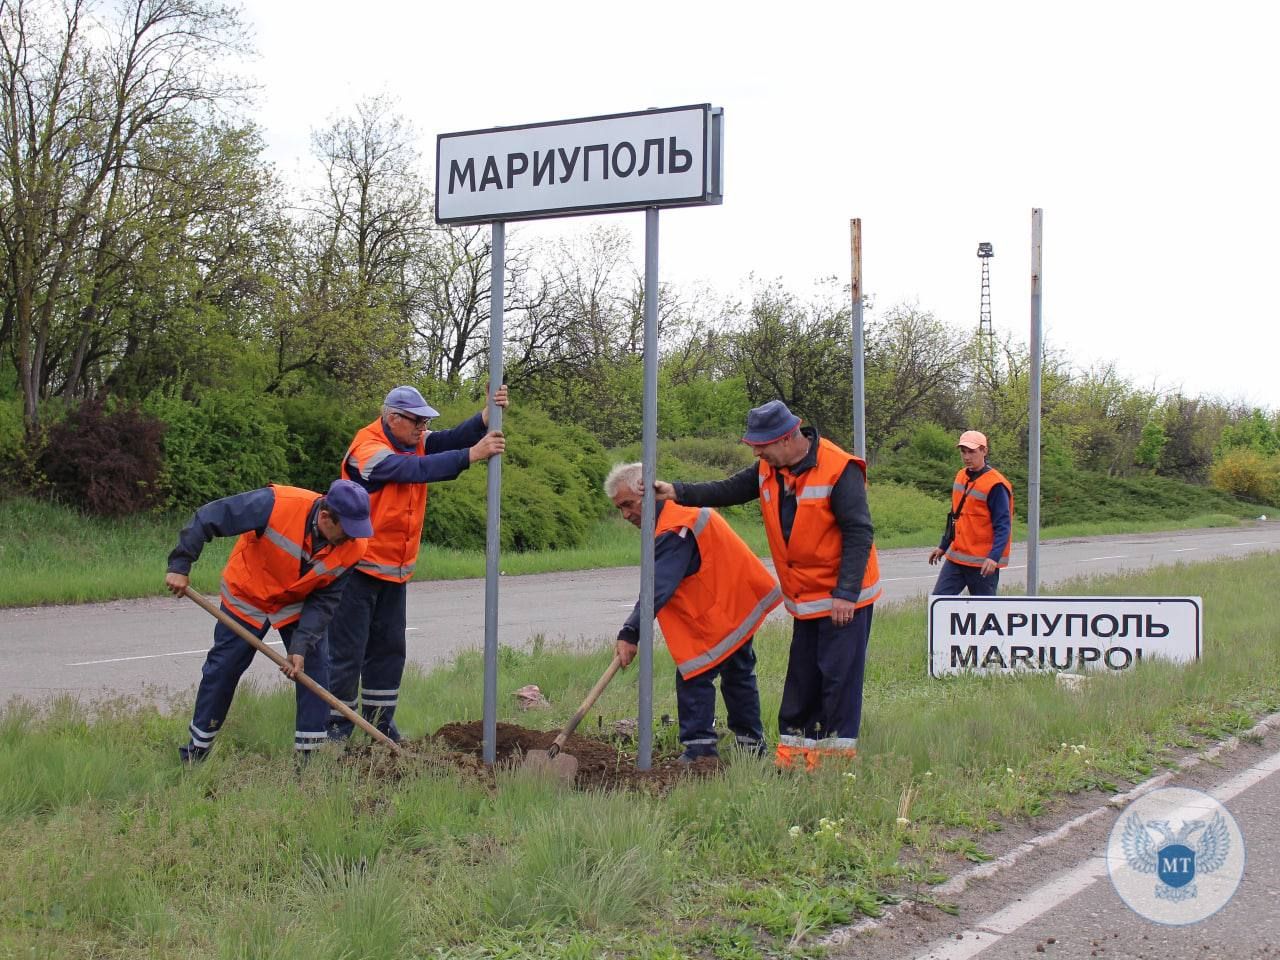 "Это Средневековье": россияне в Мариуполе меняют указатели и возвращают "ГАИ"